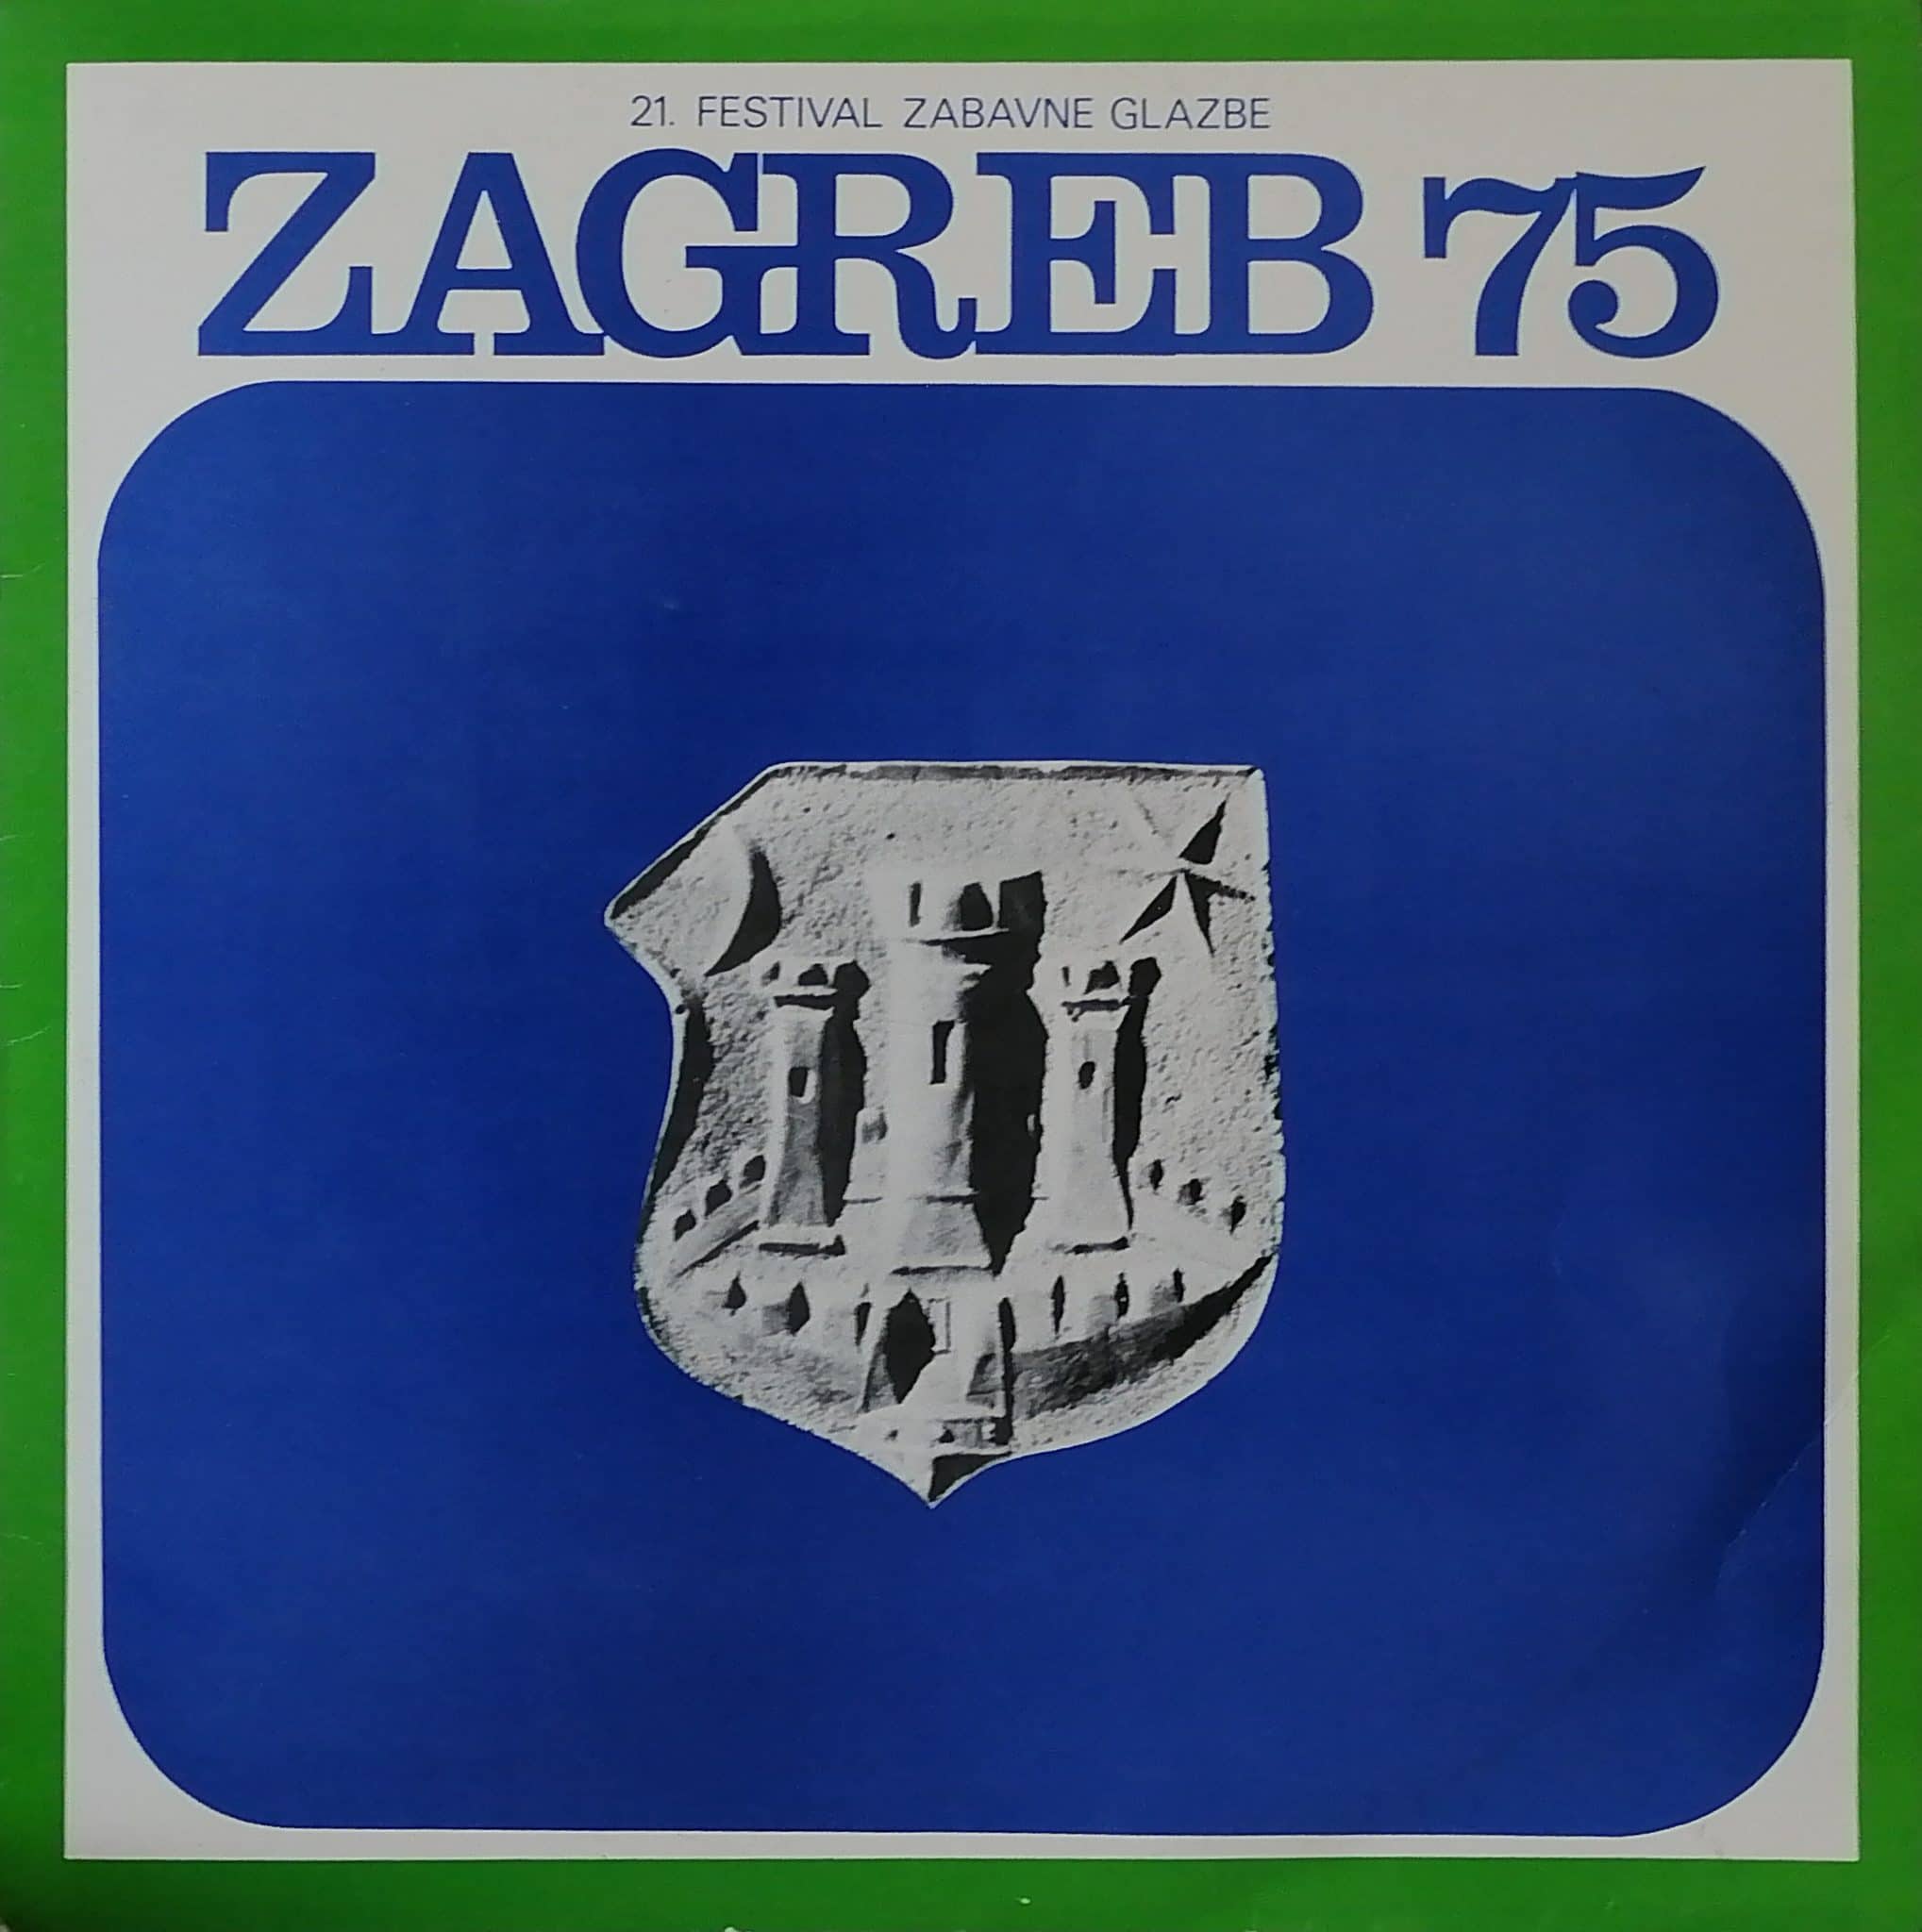 Gramofonska ploča Zagreb 75 - 21. Festival Zabavne Glazbe Zagreb '75  Tereza Kesovija / Miki Jevremović / Dalibor /Brun...